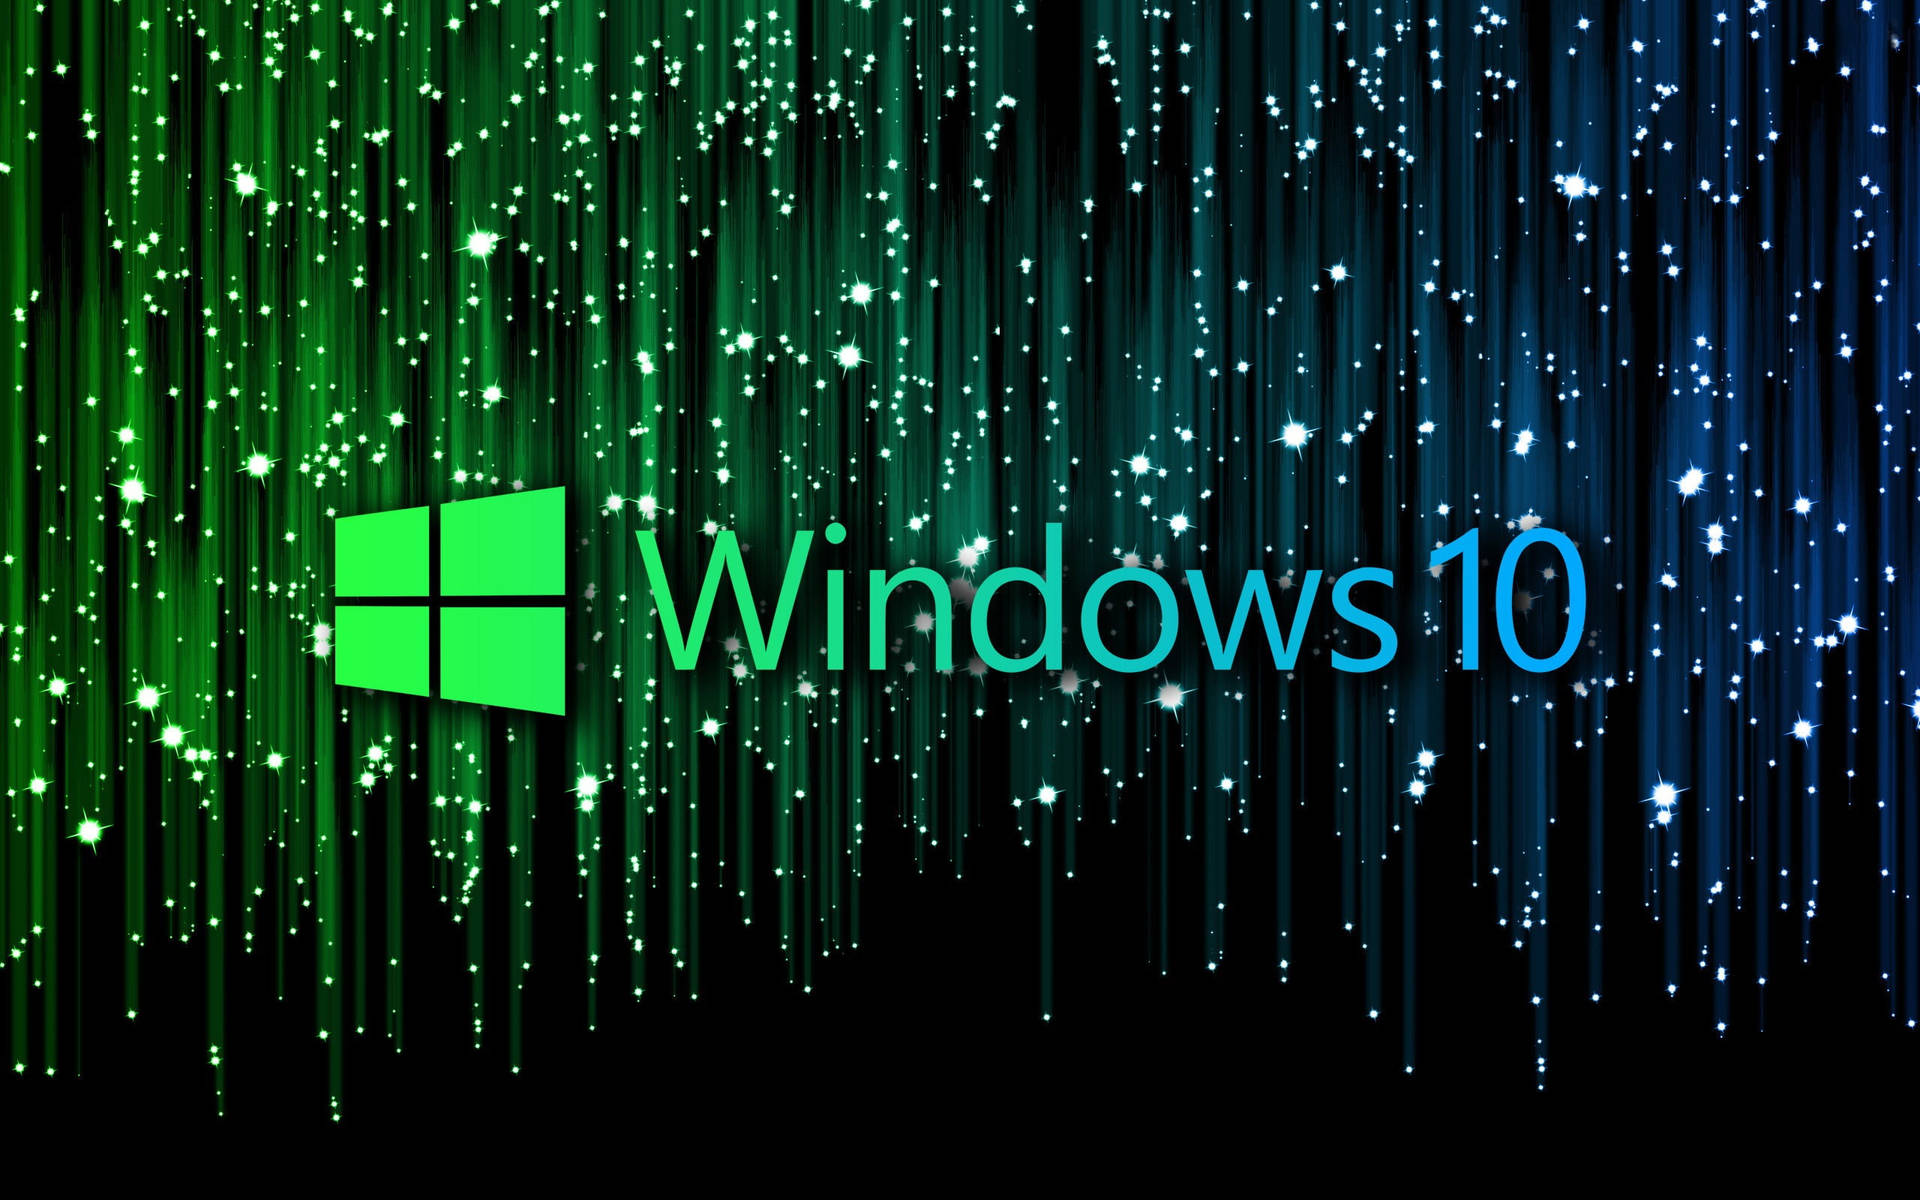 Sparkly Windows 10 Theme